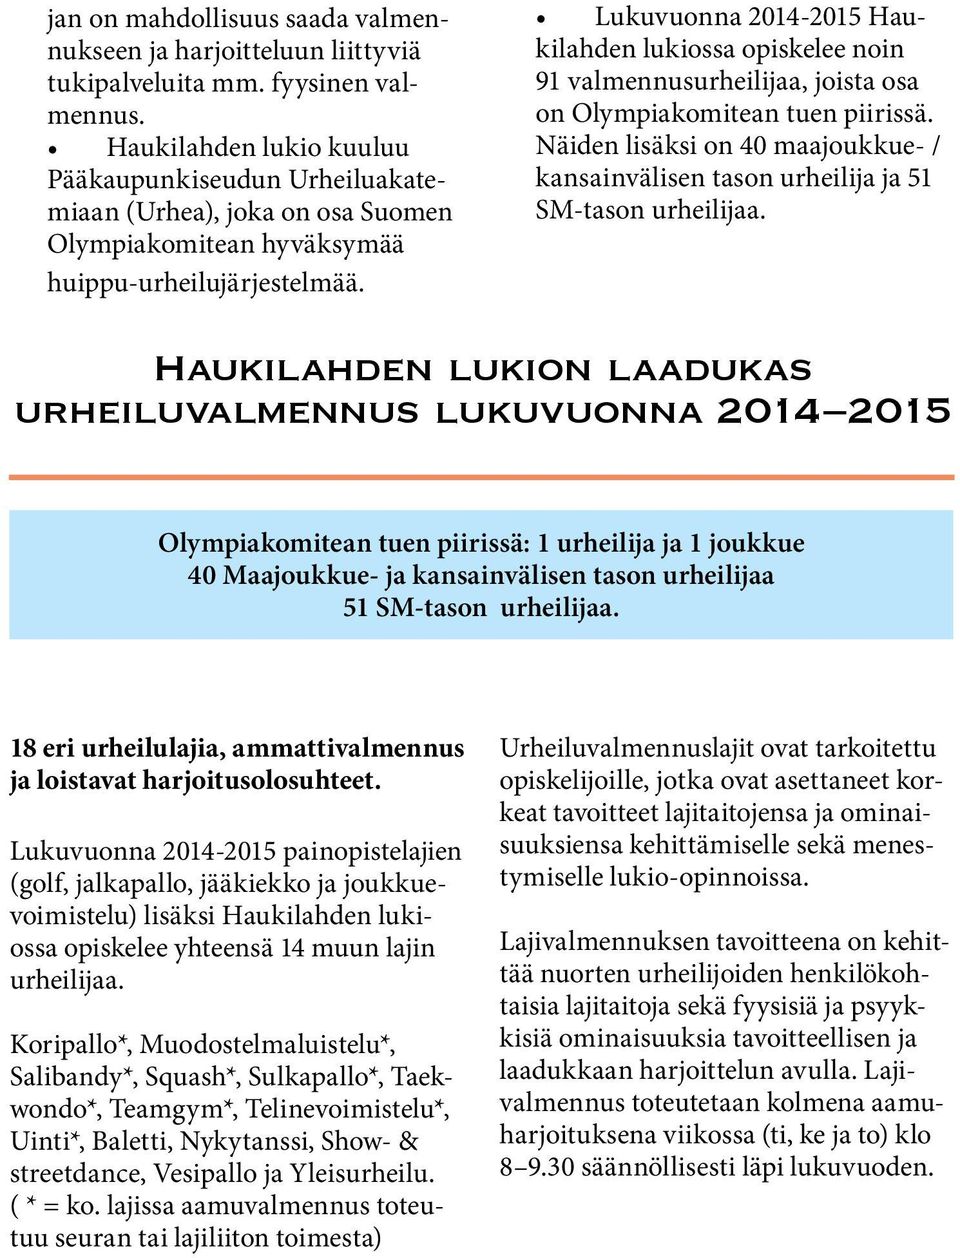 Lukuvuonna 2014-2015 Haukilahden lukiossa opiskelee noin 91 valmennusurheilijaa, joista osa on Olympiakomitean tuen piirissä.